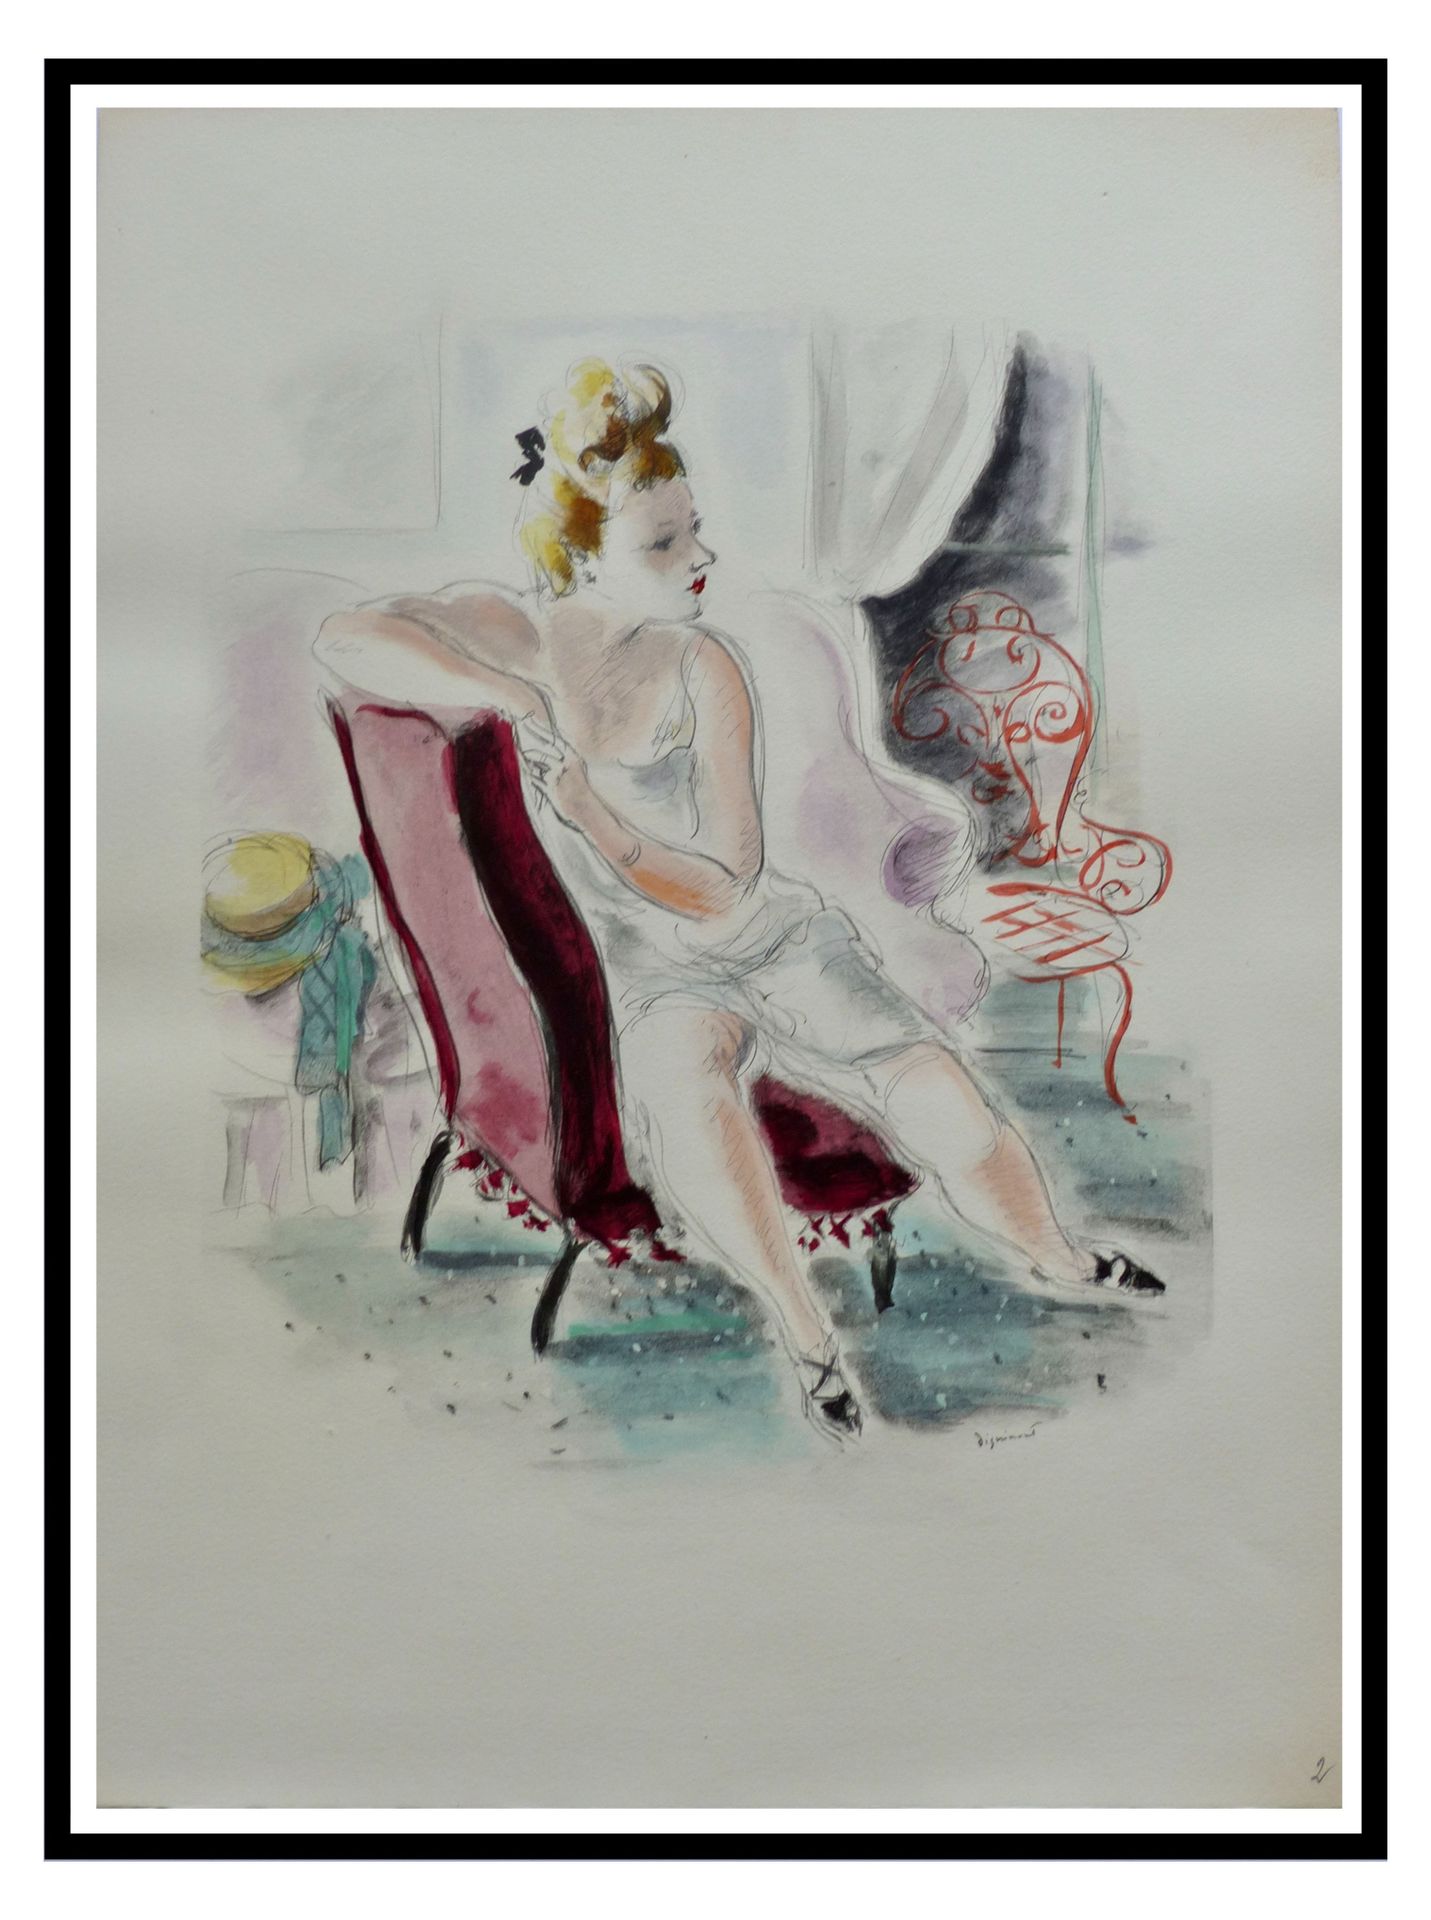 André DIGNIMONT André DIGNIMONT (1891 - 1965)

Der rote Sessel, 1946

In der Pla&hellip;